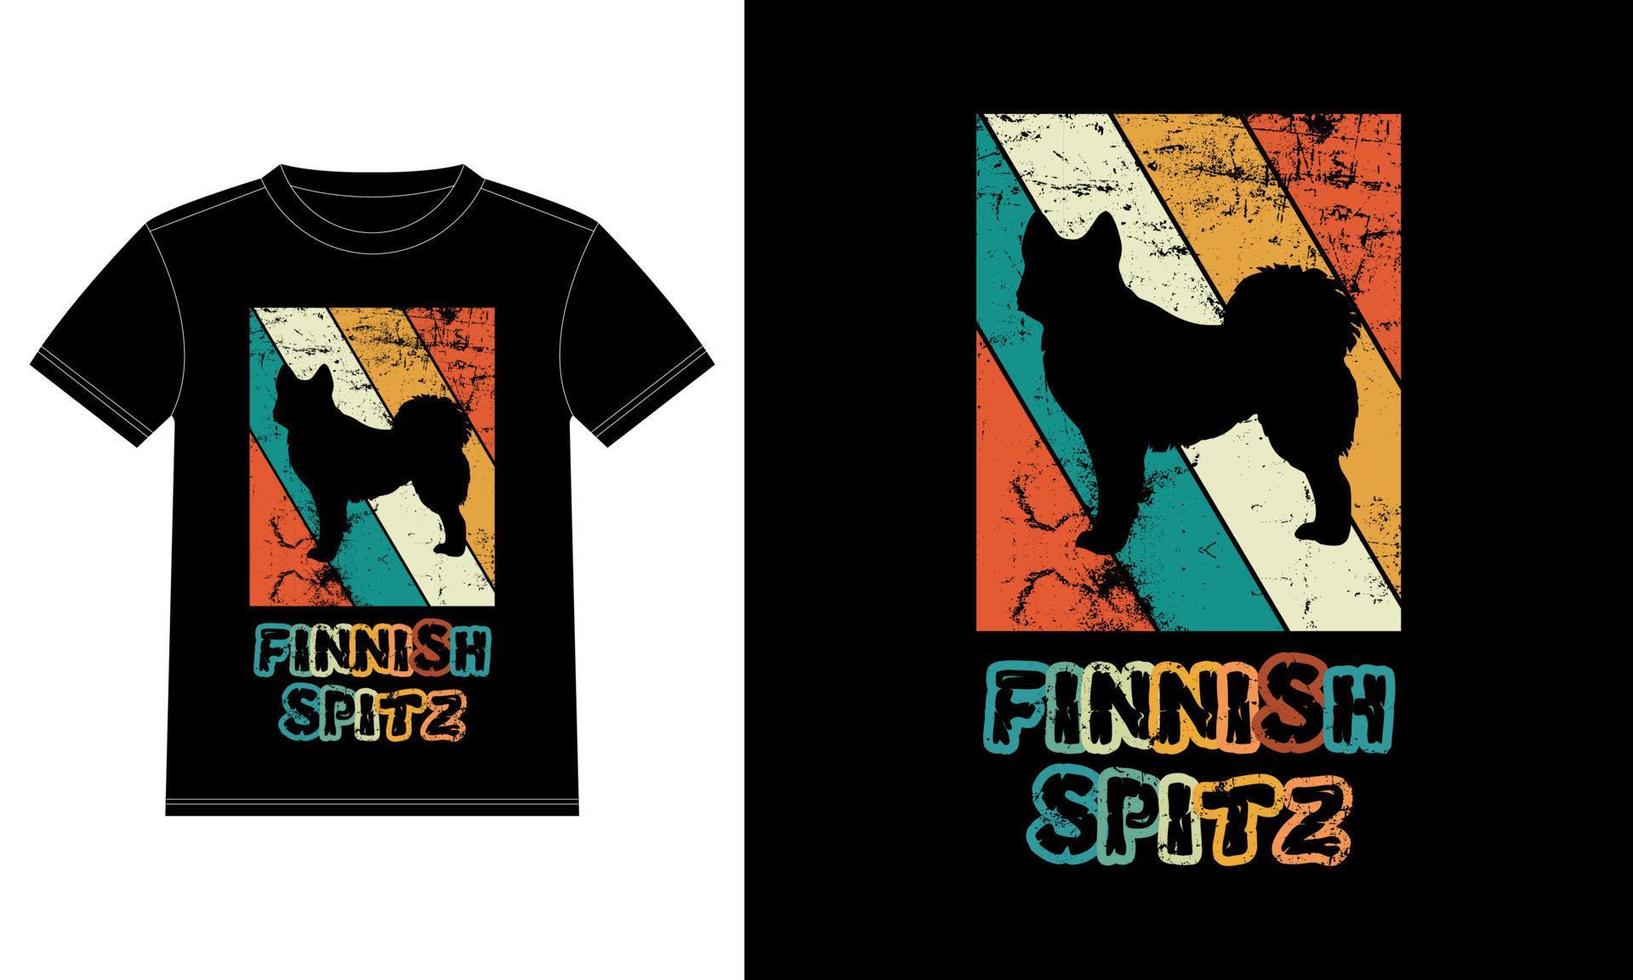 gracioso finlandés spitz vintage retro puesta de sol silueta regalos amante de los perros dueño del perro camiseta esencial vector